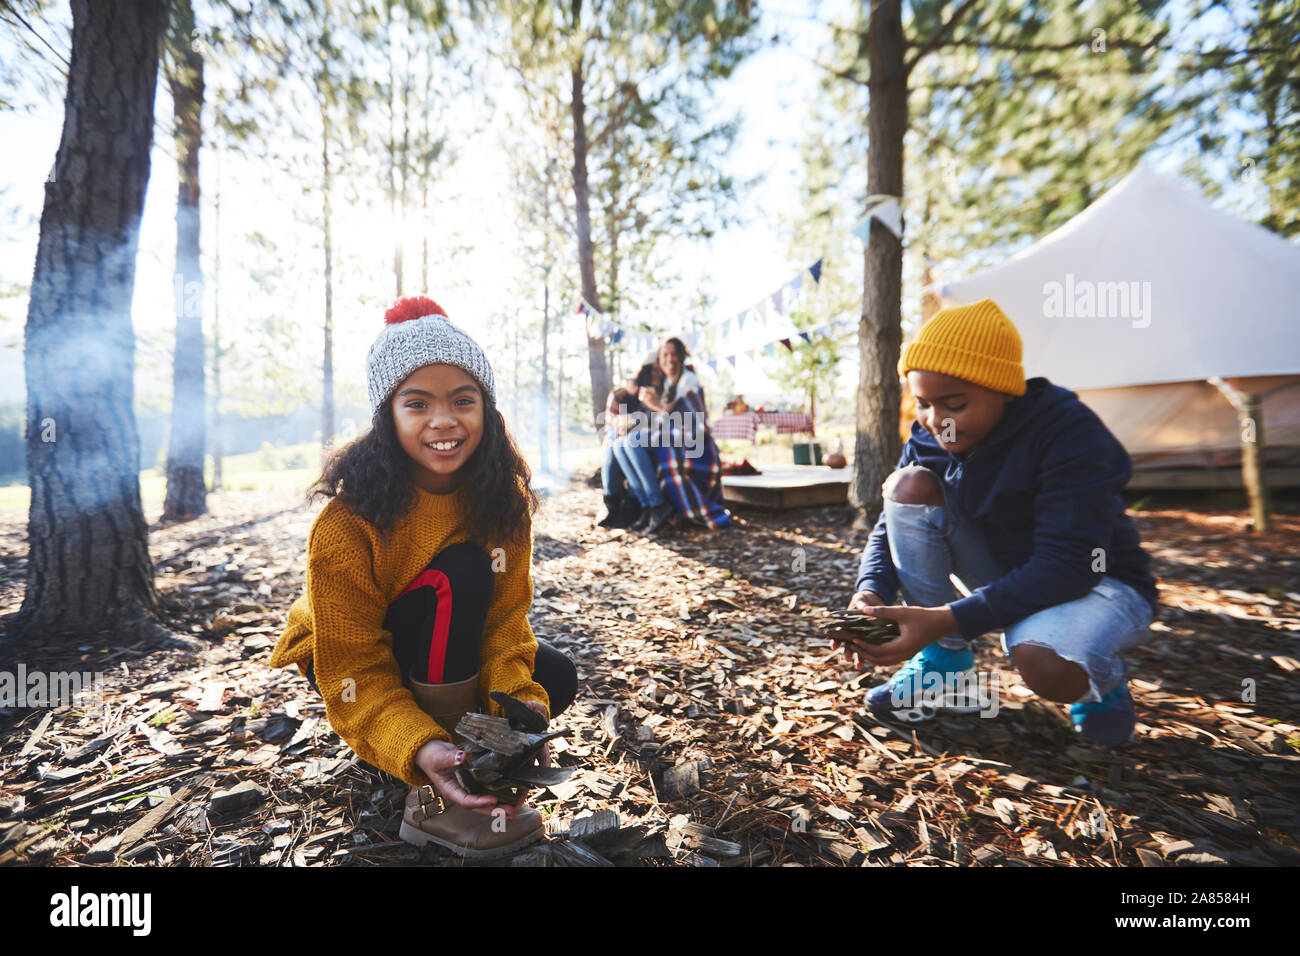 Portrait lächelnde Mädchen sammeln Anzünden bei Sunny Campingplatz in Holz Stockfoto